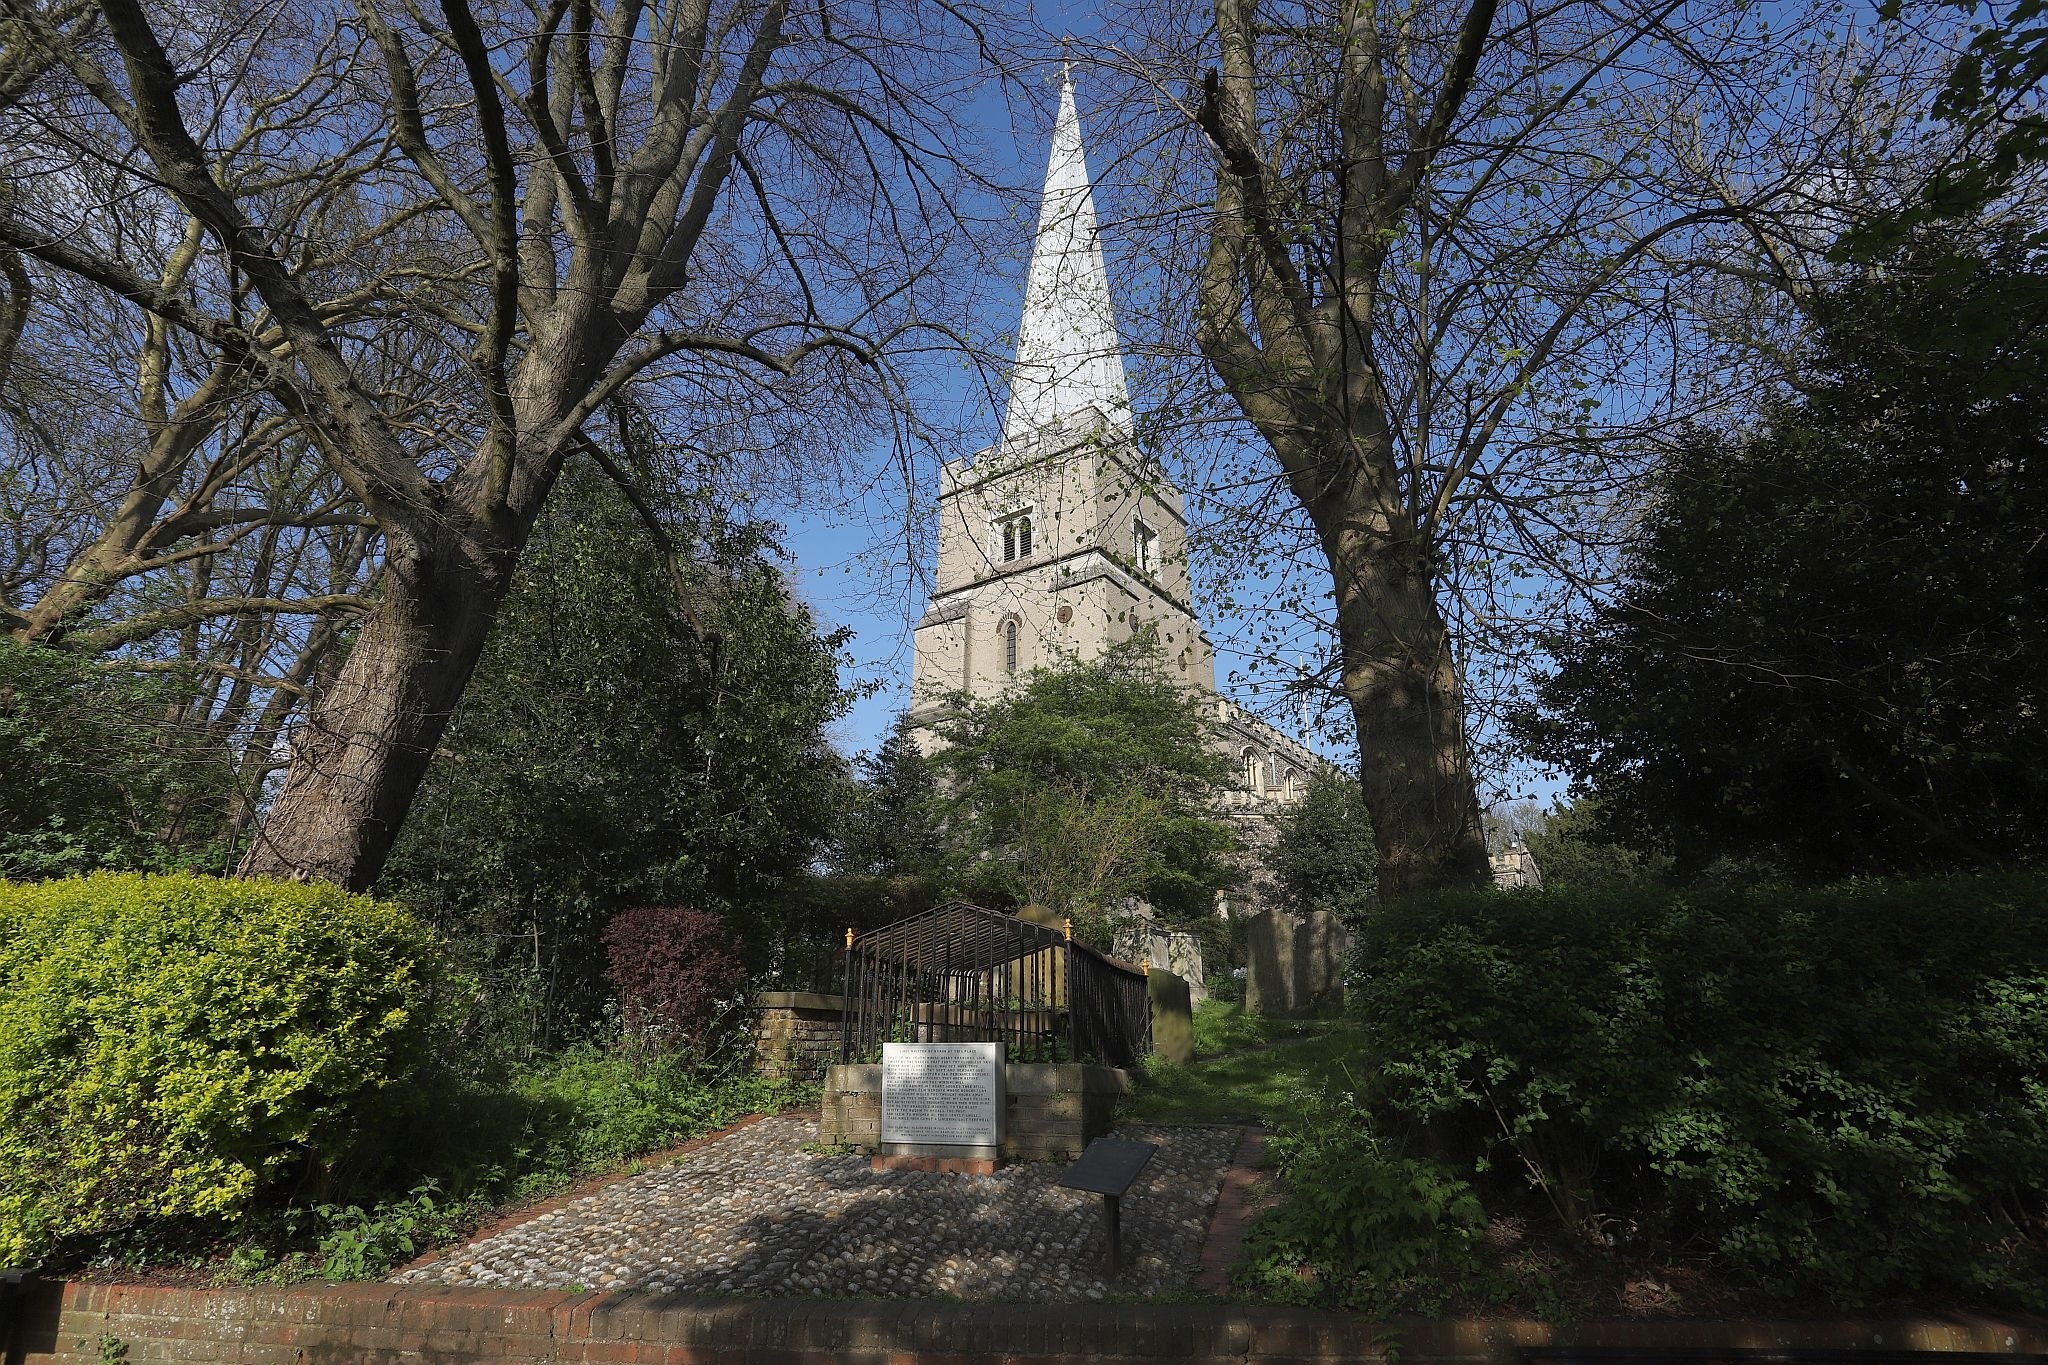 The church seen through the trees. St Mary’s Church, Harrow-on-the-Hill, London. 29-Apr-2023.